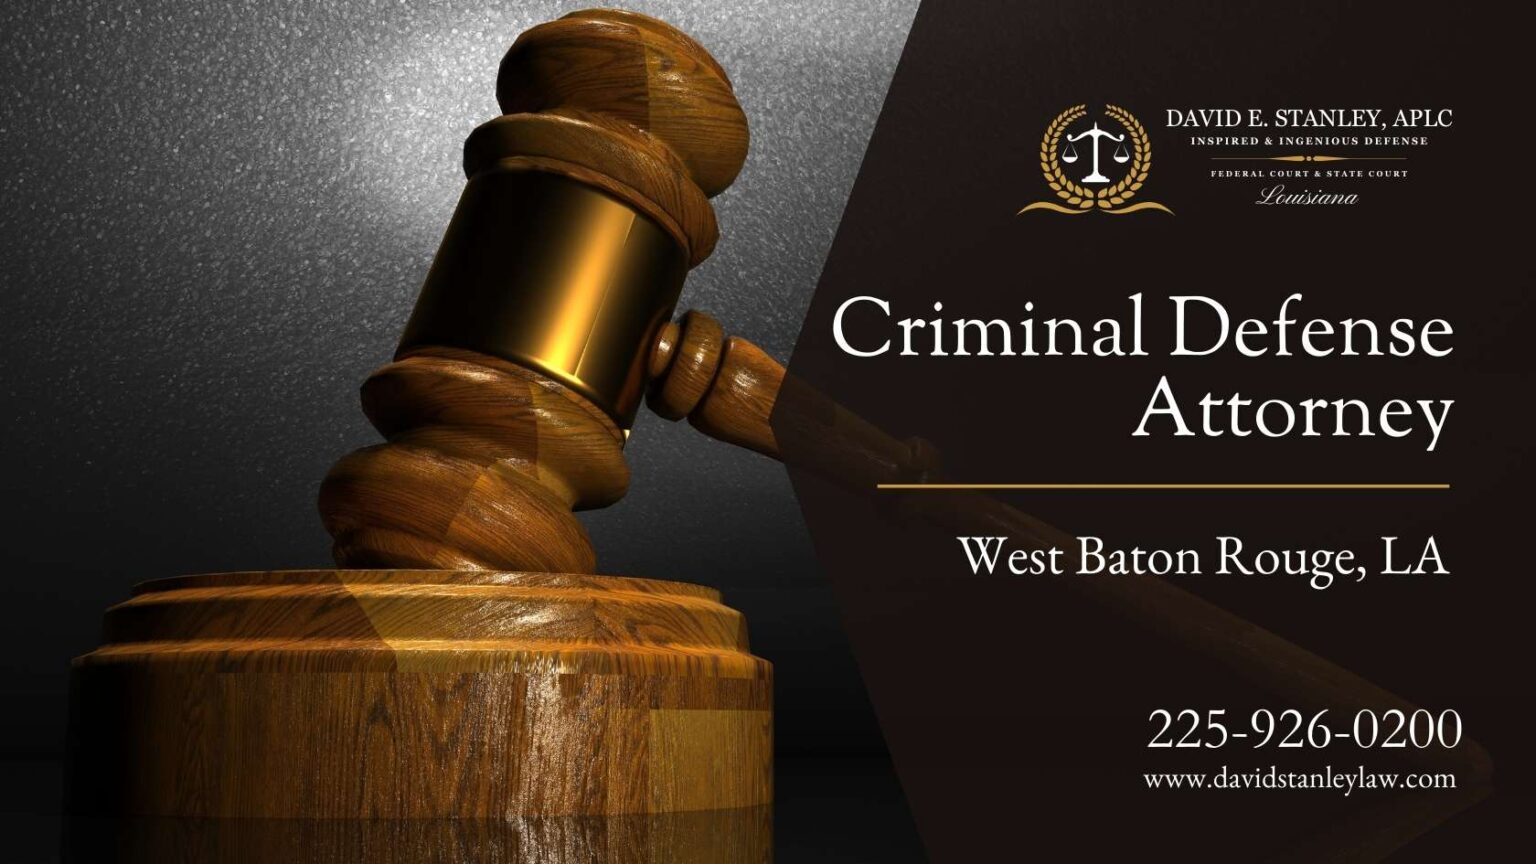 Criminal Defense Attorney West Baton Rouge LA